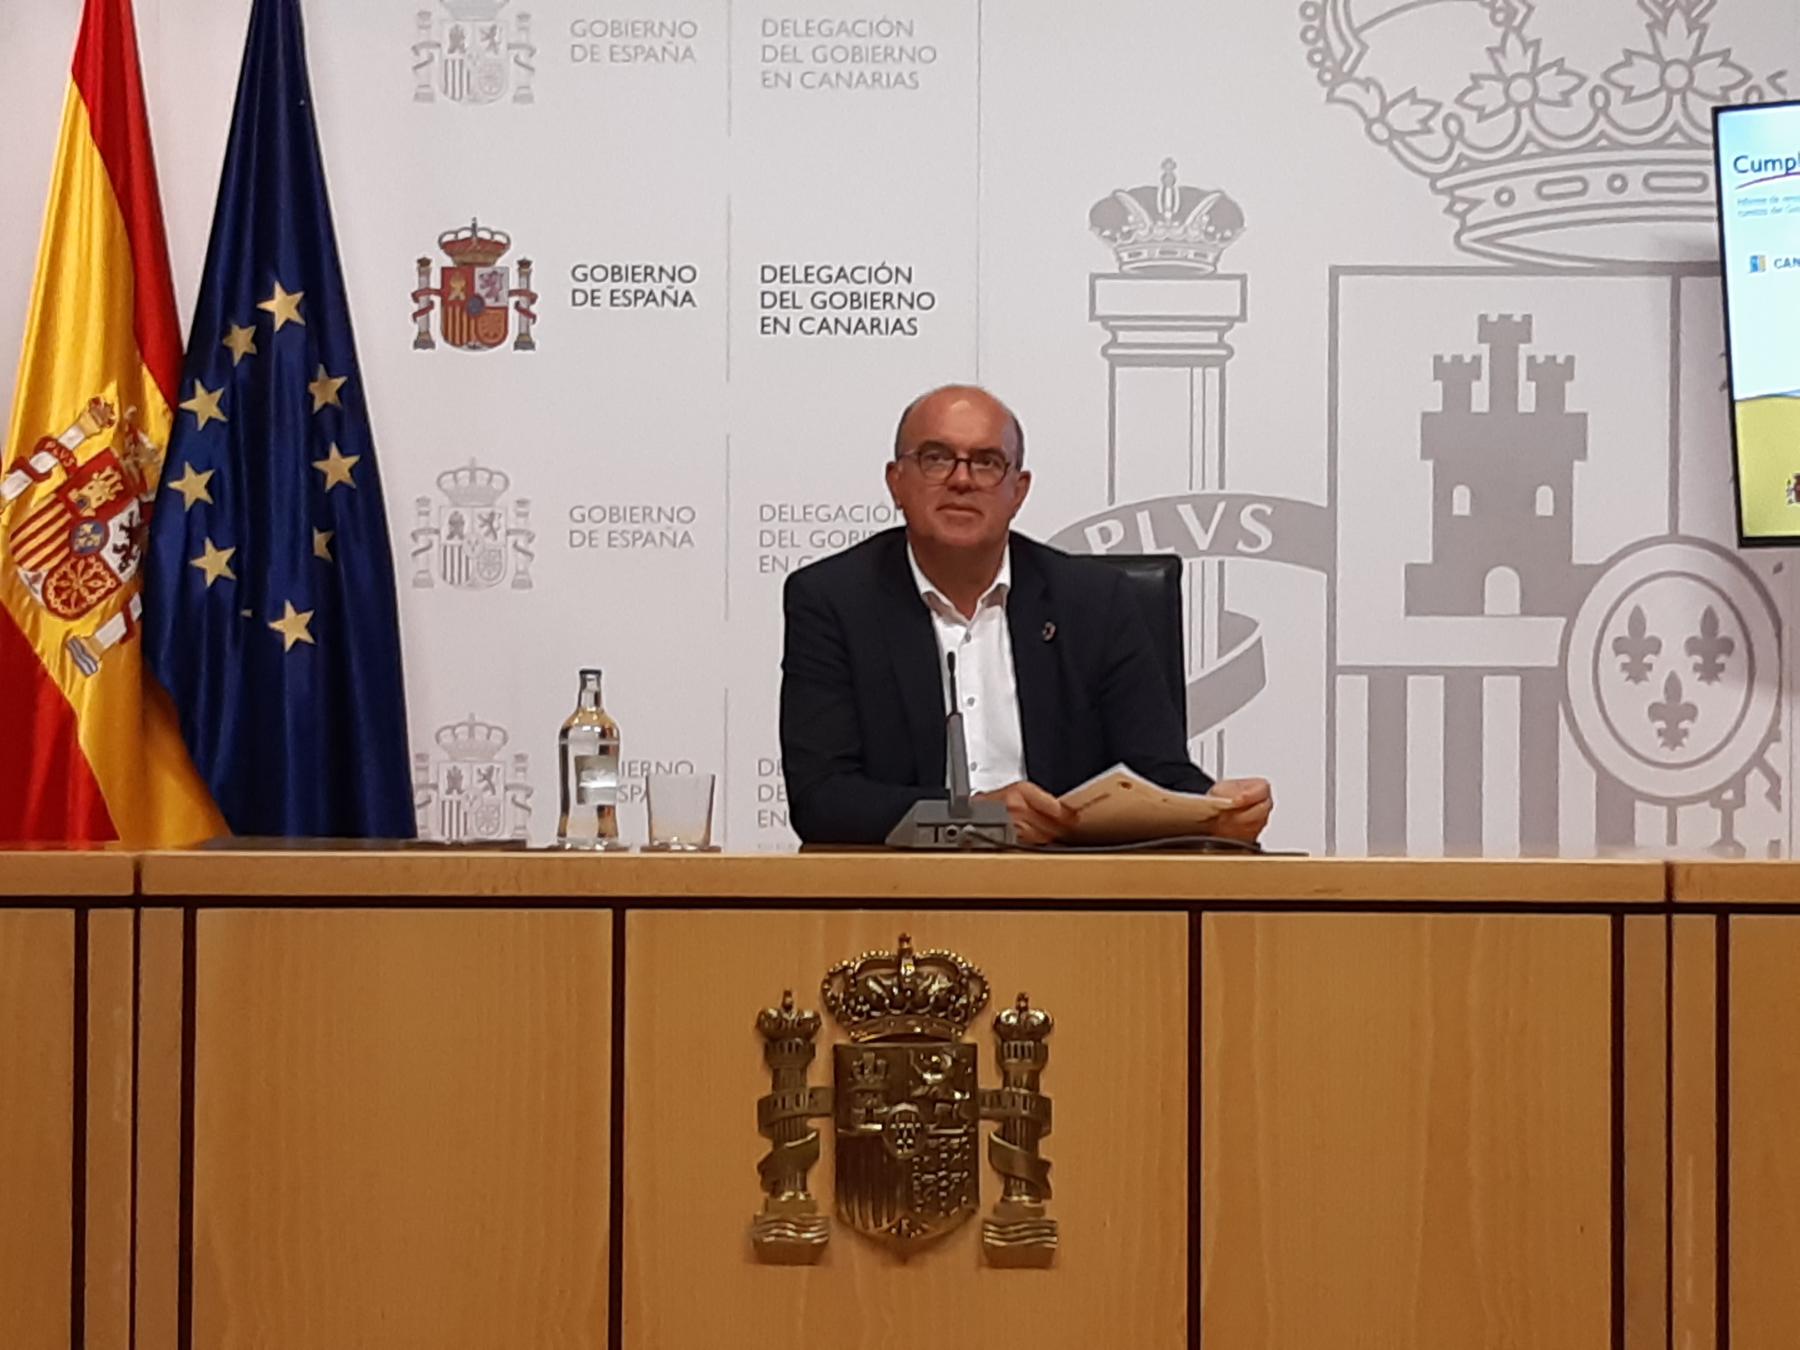 El Gobierno de España refuerza su compromiso con Canarias en el primer semestre del año con medidas frente a las emergencias sanitaria y volcánica y para la cohesión social, el impulso económico y la transición ecológica